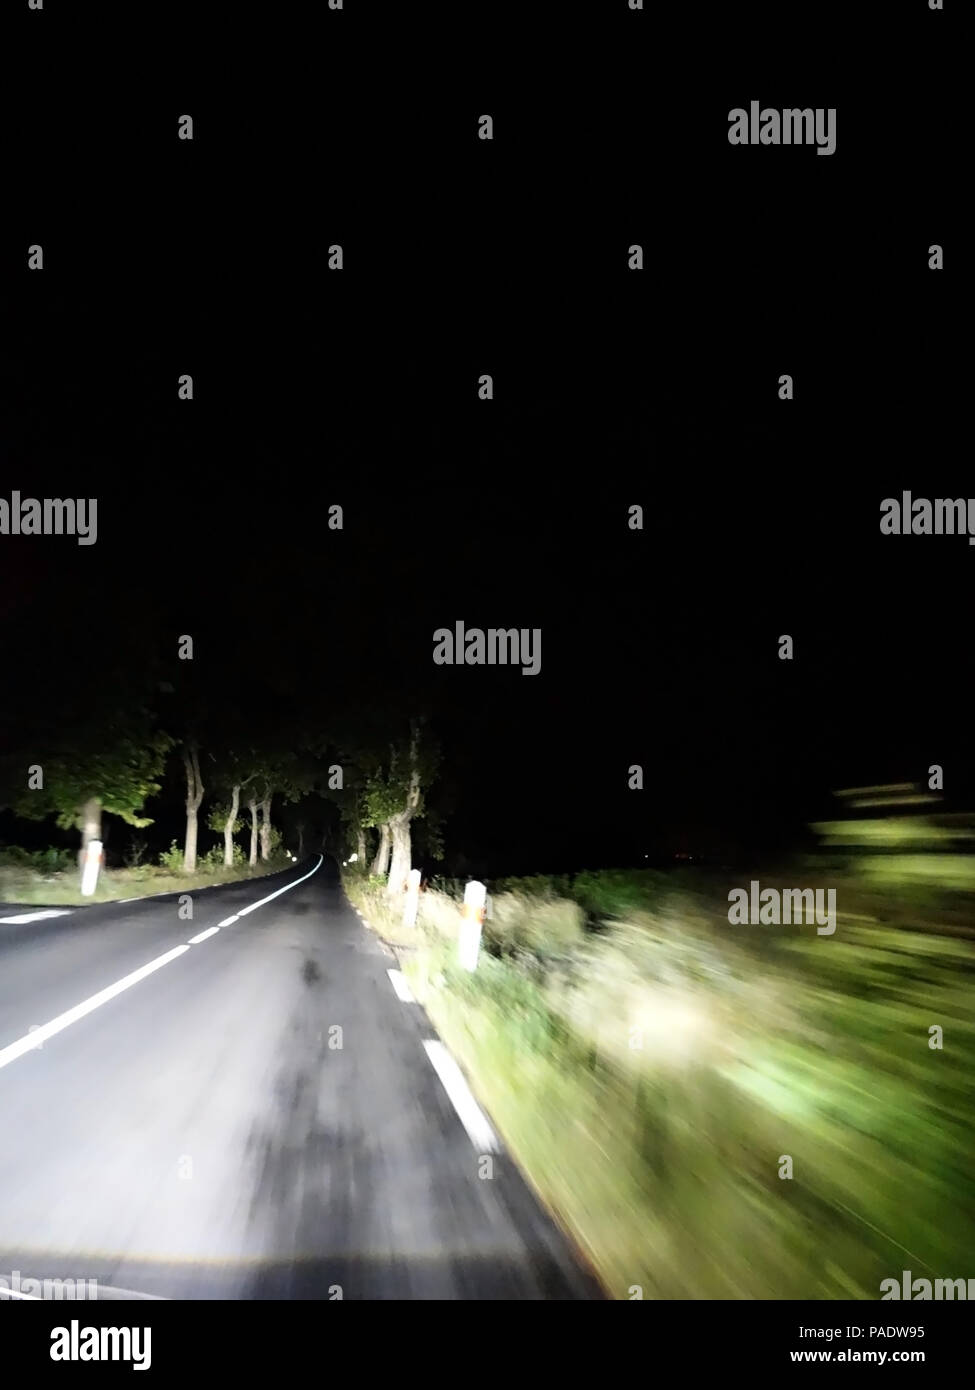 La conducción del automóvil por la noche en una carretera oscura, conducción nocturno rápidamente en el lado derecho de la carretera a través de avenidas de Árboles Foto de stock